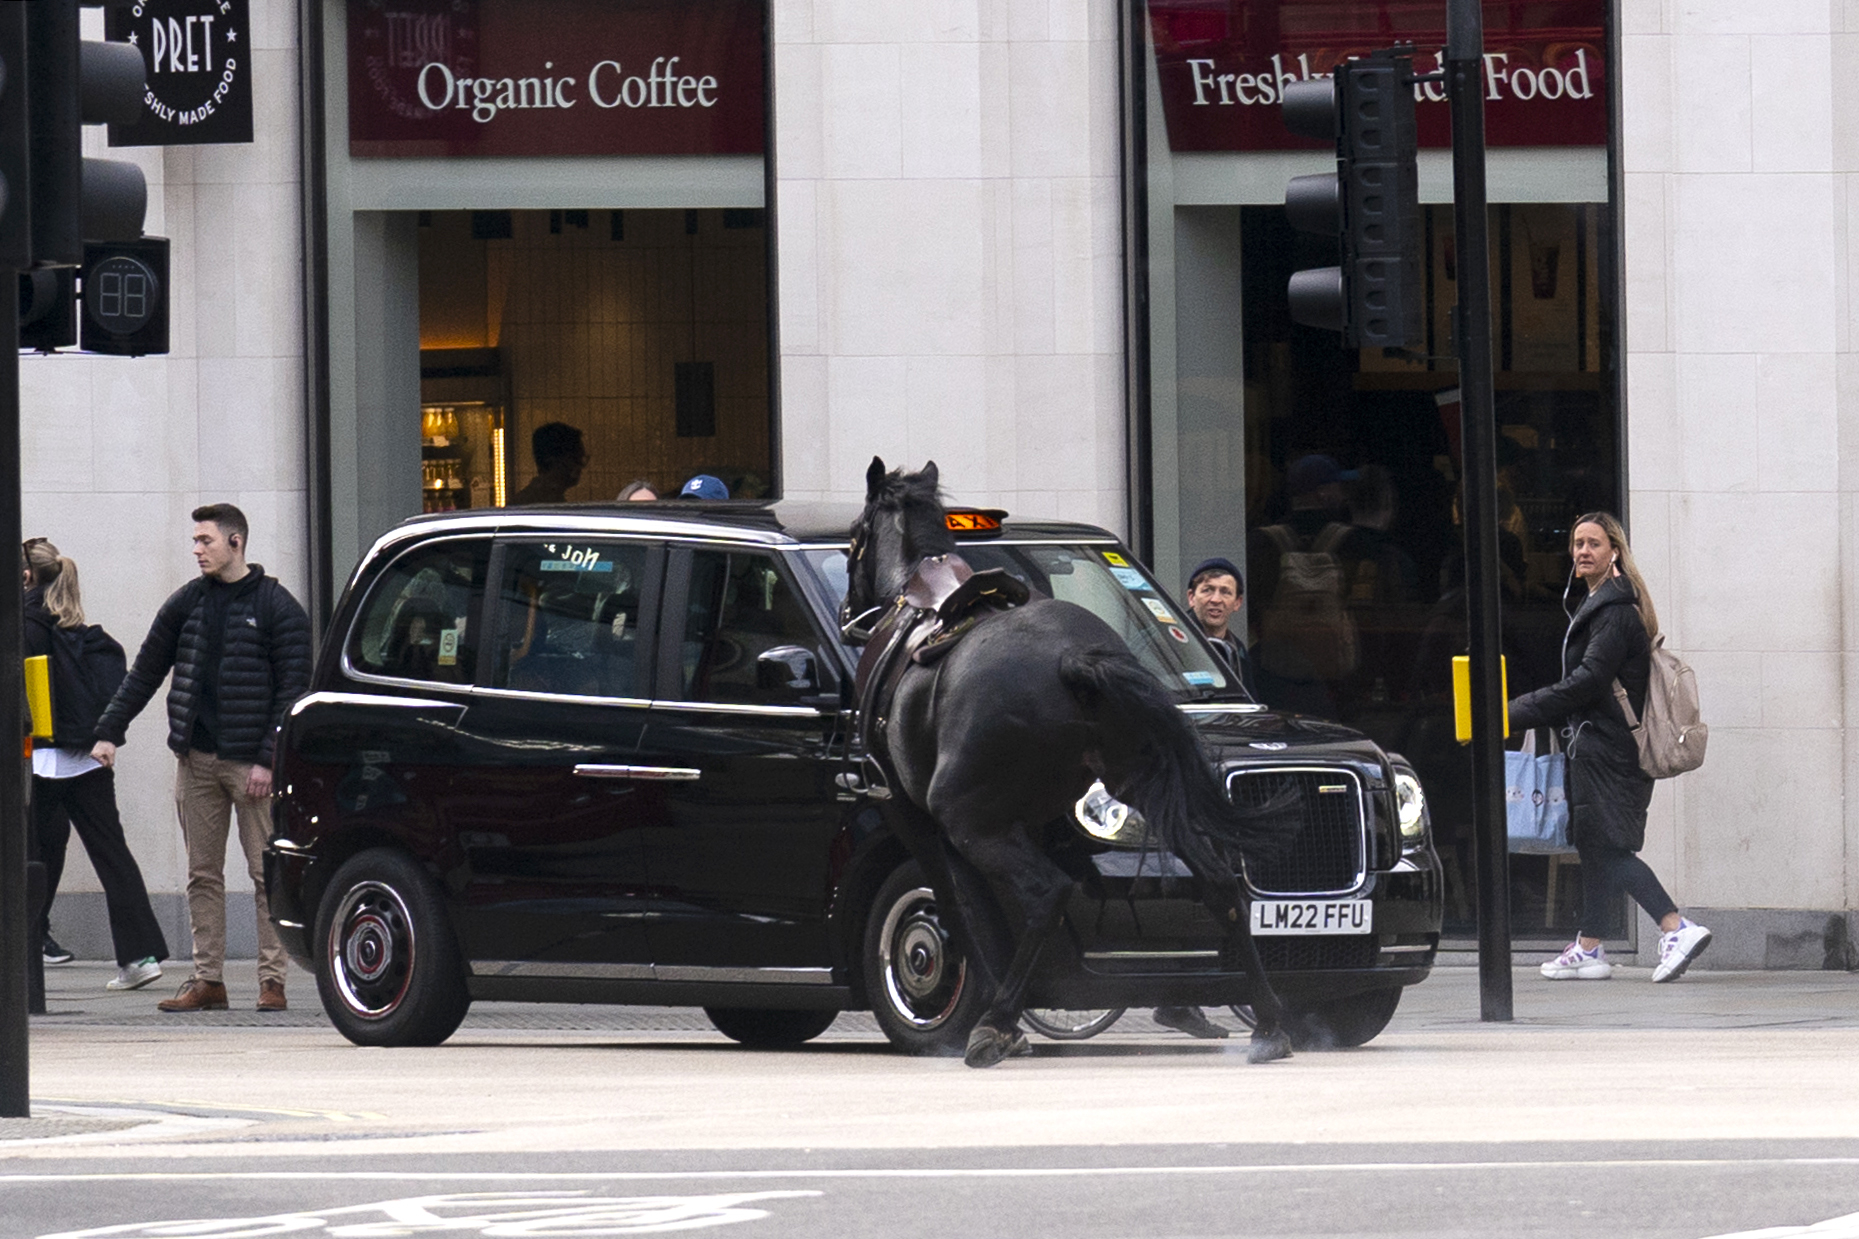 Eines der tobenden Pferde kollidierte mit einem schwarzen Taxi vor einem Pret-Café, während Passanten zuschauten